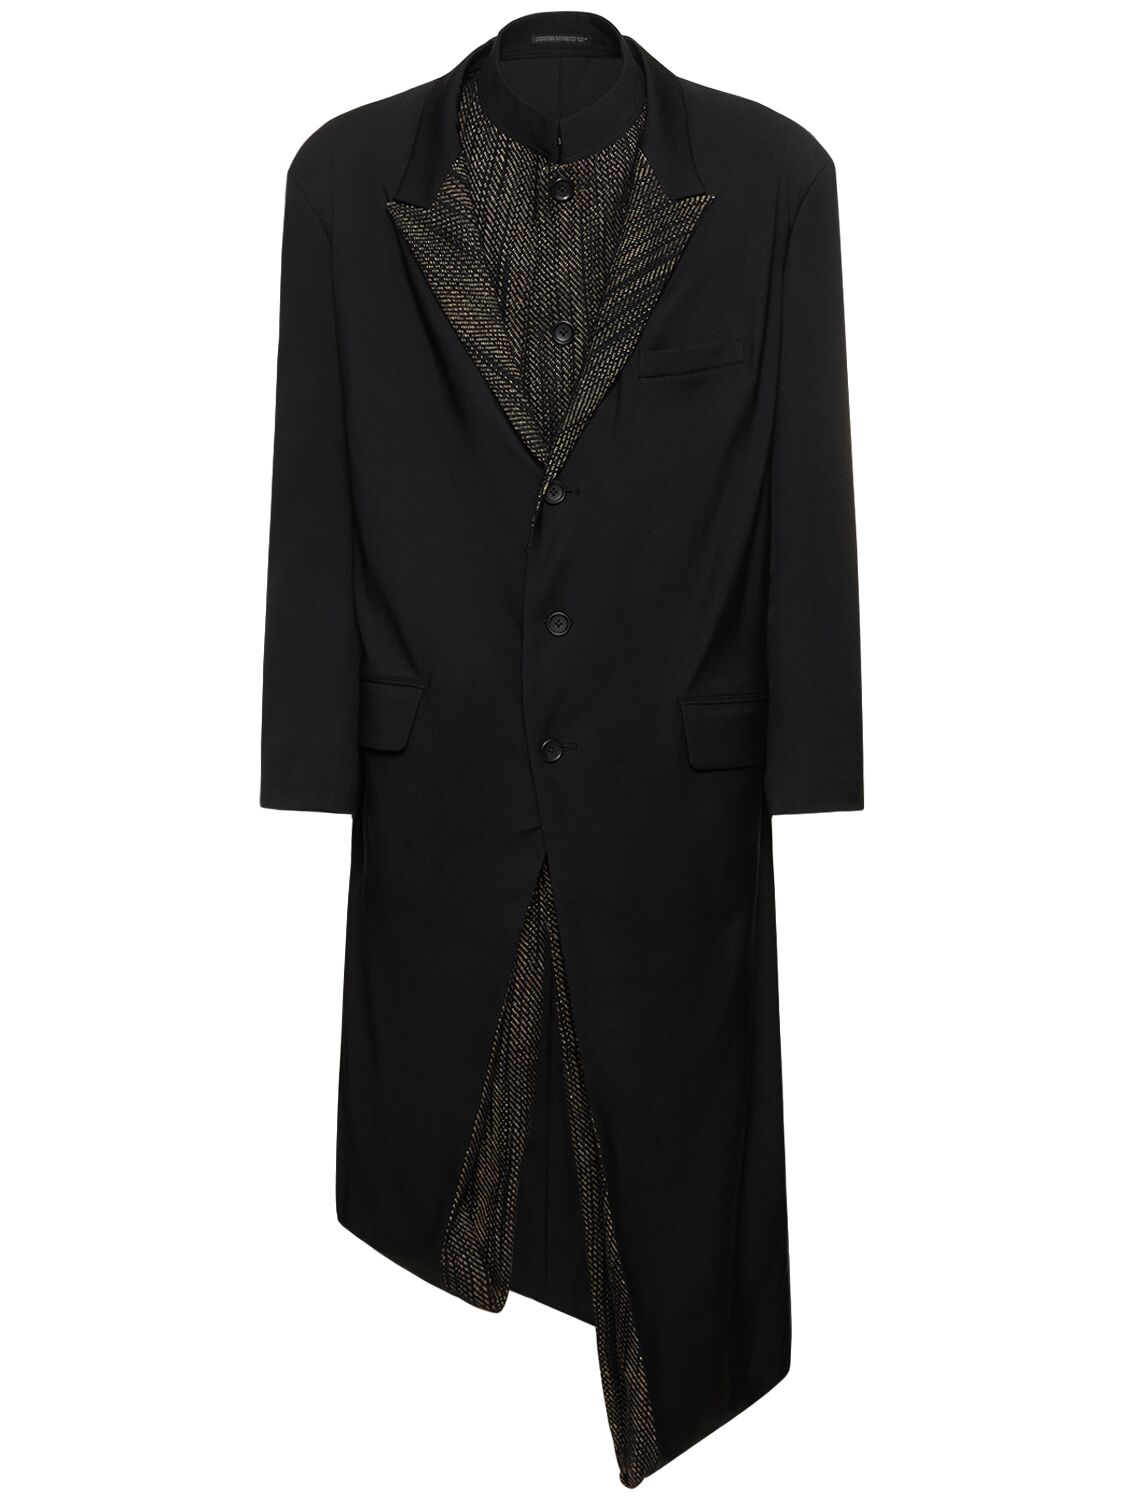 K-paneled Double Layered Coat – MEN > CLOTHING > COATS